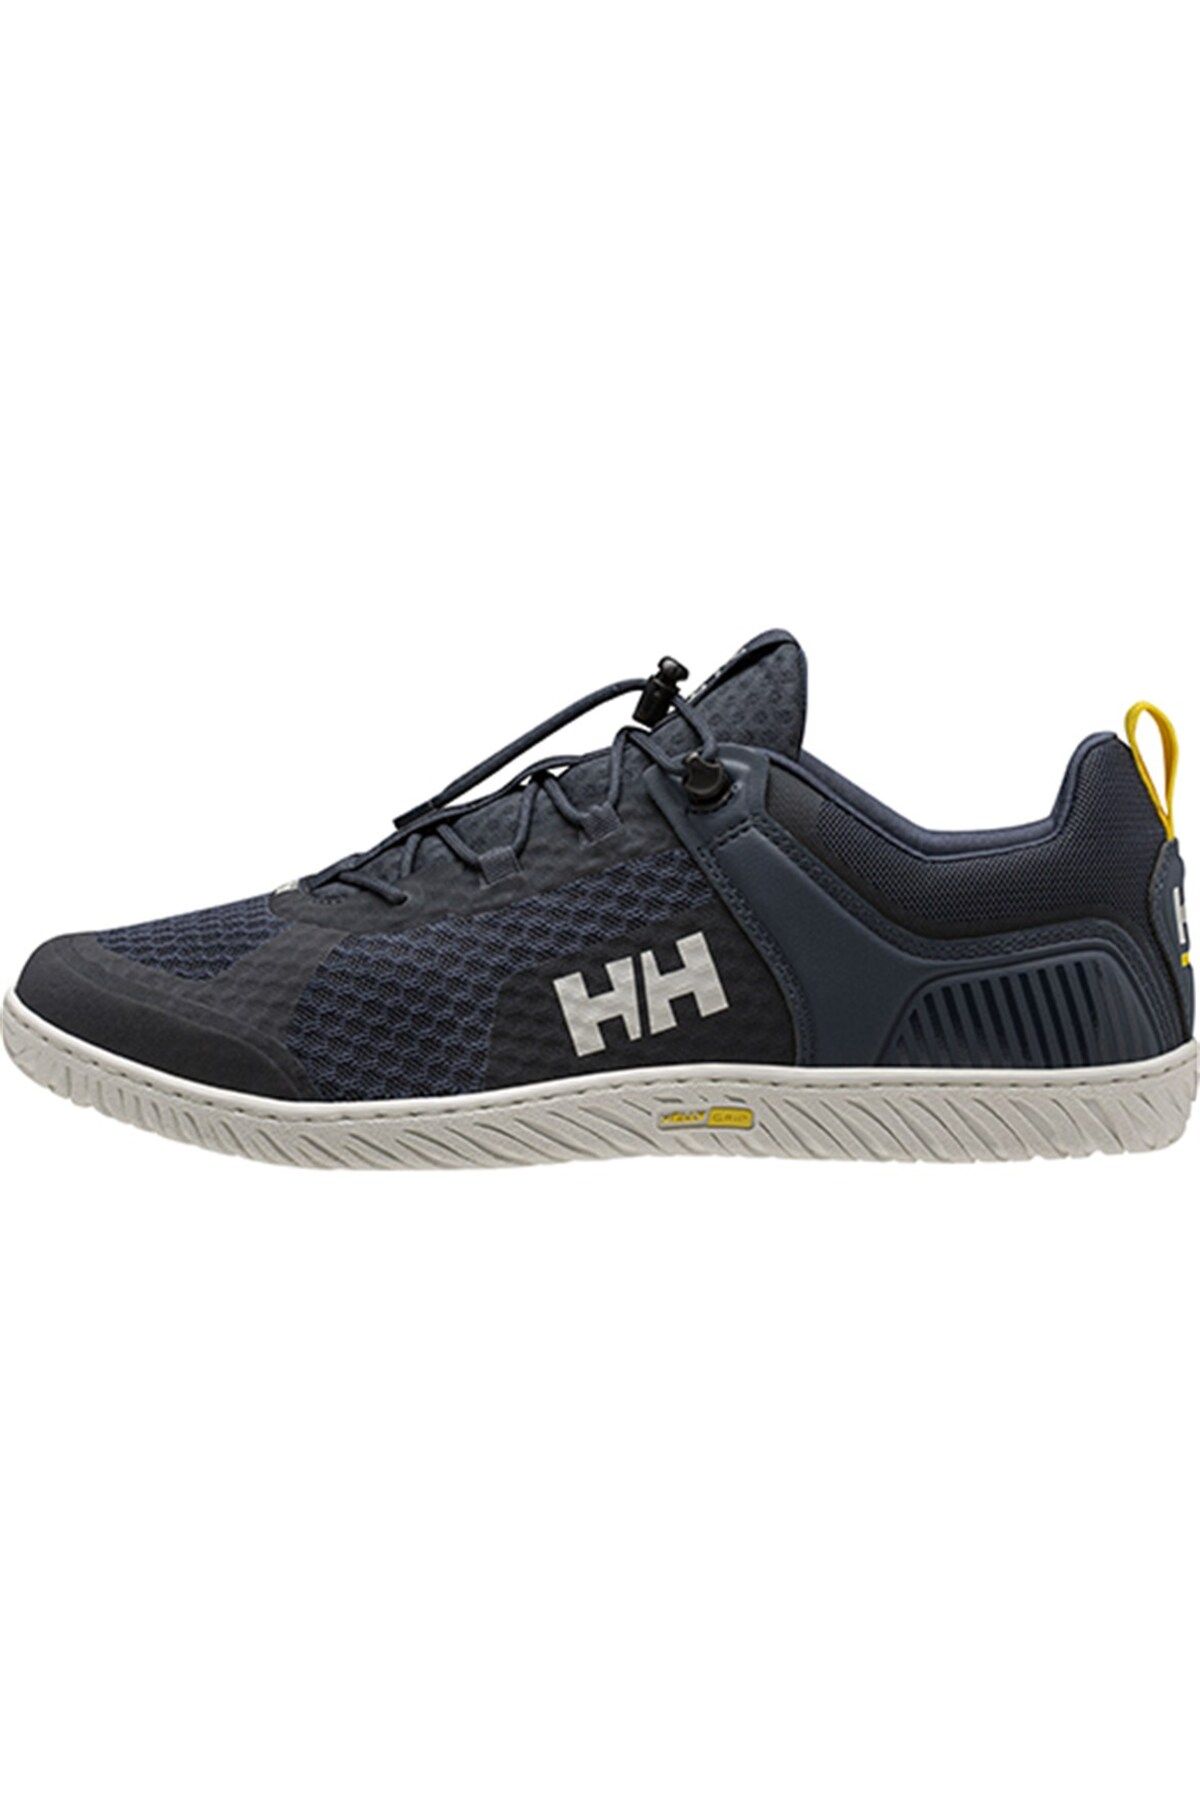 Helly Hansen Hh Hp Foıl V2 Outdoor Ayakkabı